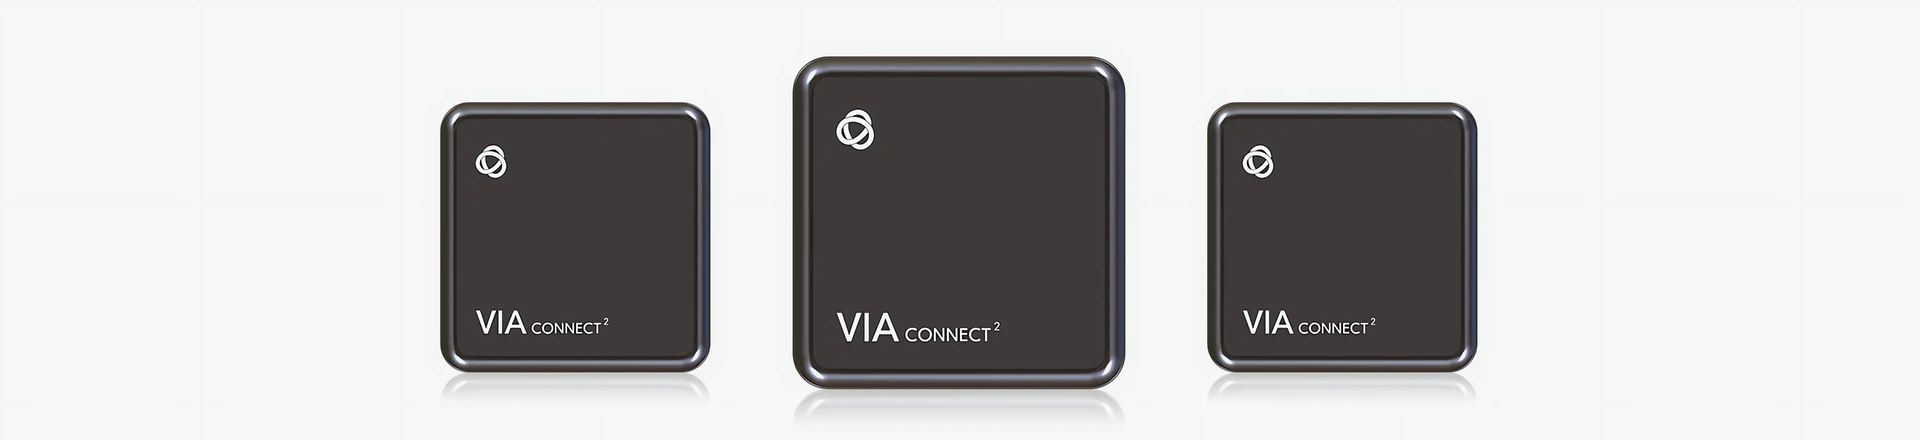 Kramer VIA Connect² - Rozwiązanie na czas pracy hybrydowej